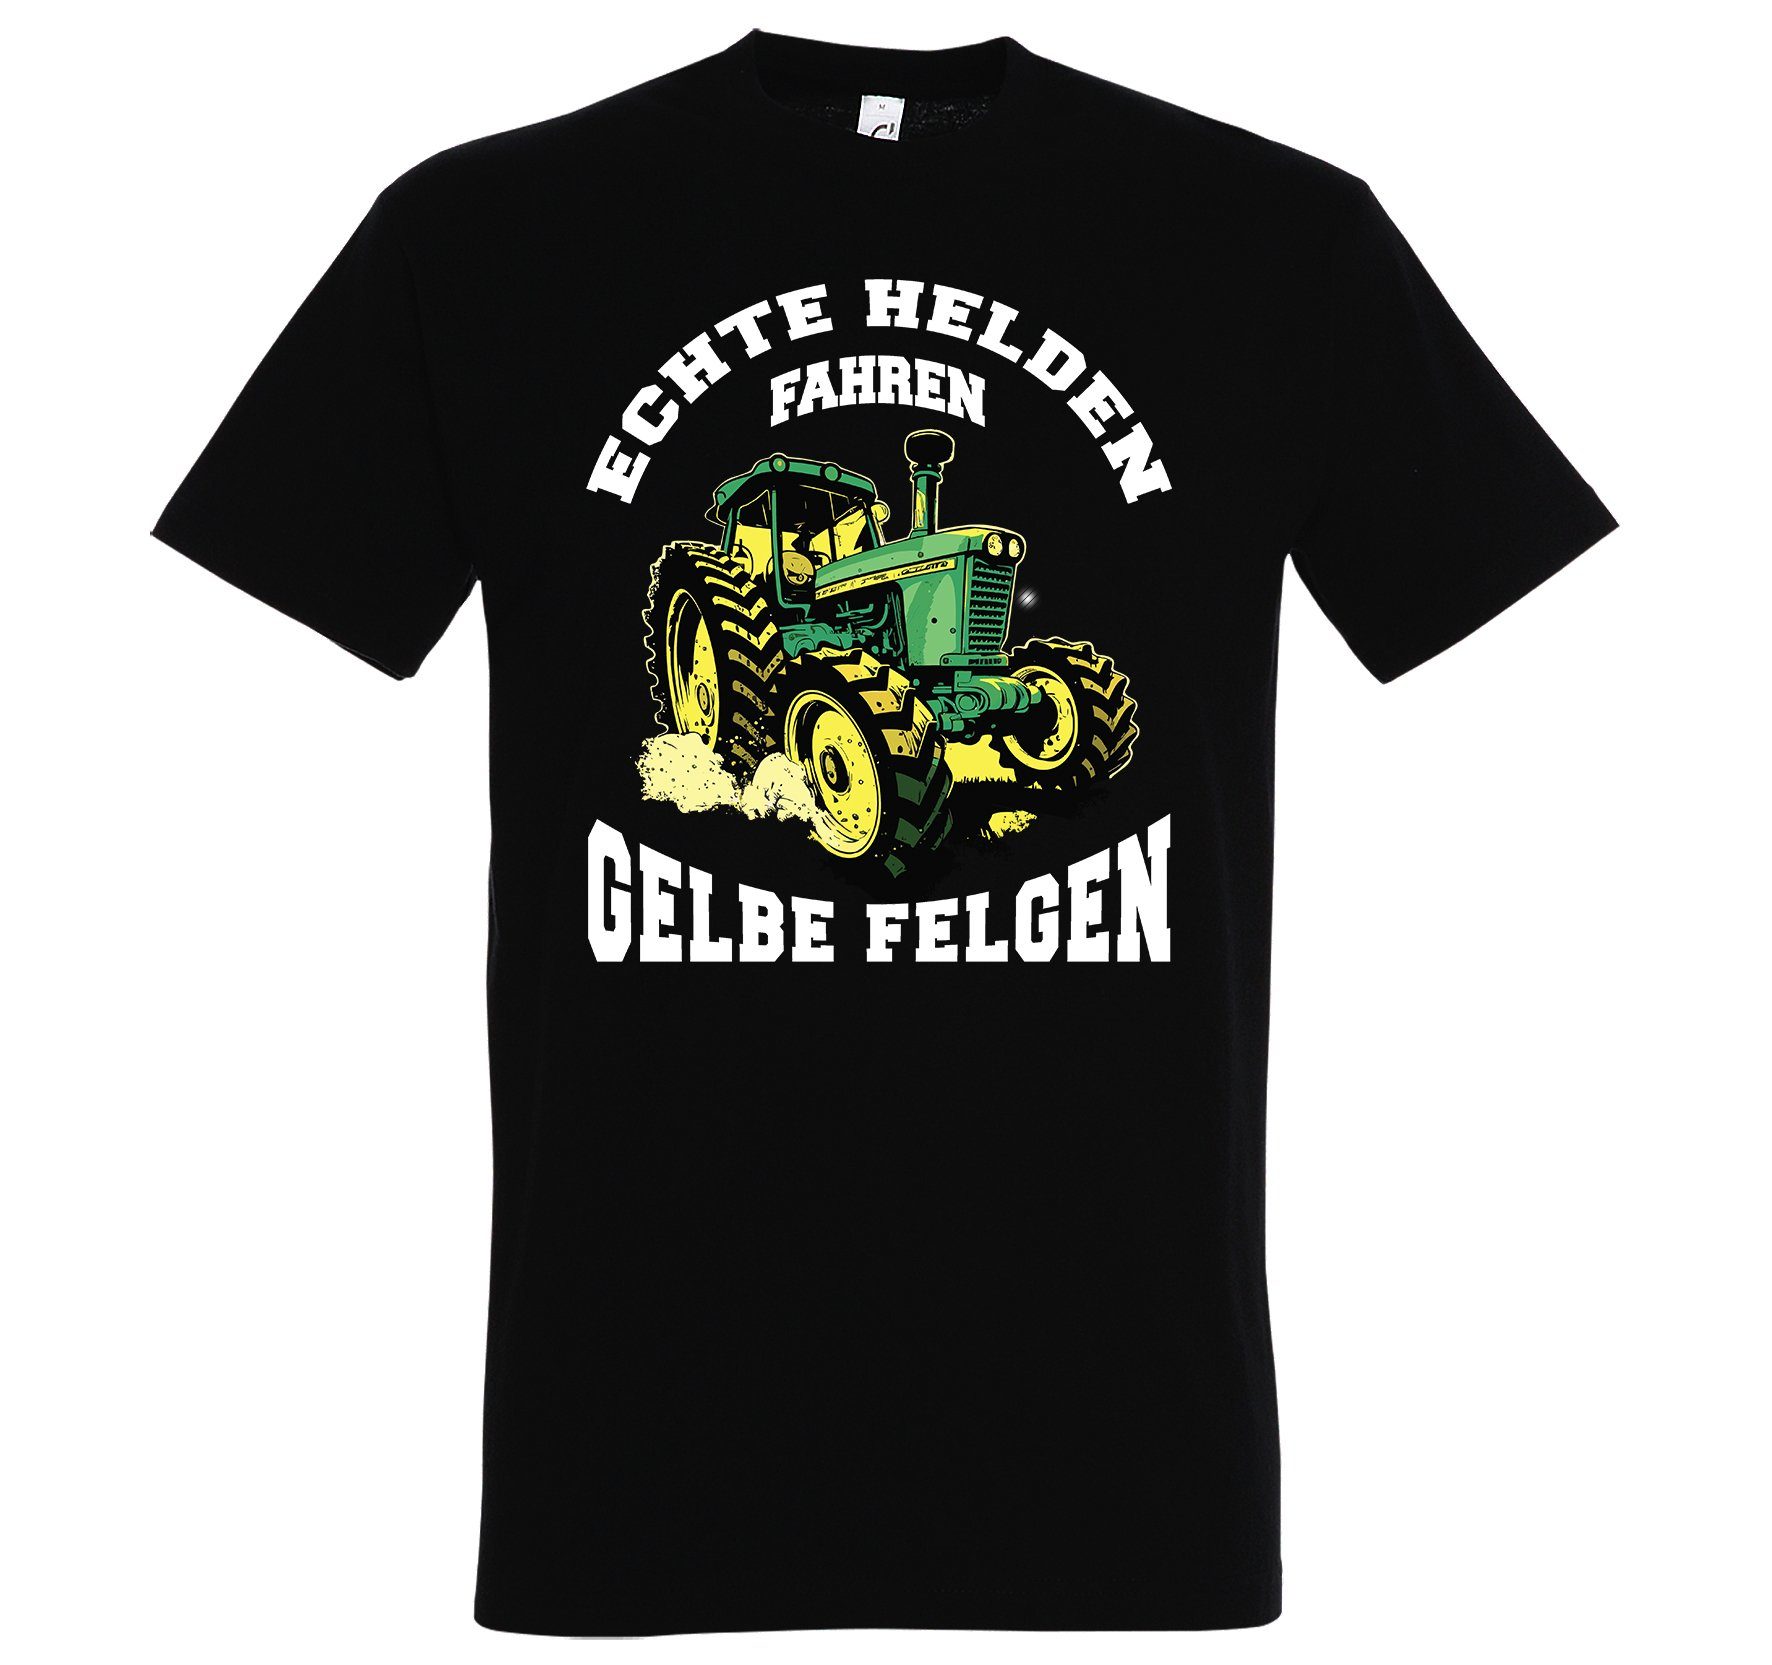 Print-Shirt Designz "Echte T-Shirt gelbe Herren Felgen" Helden fahren Spruch Youth mit Schwarz lustigem